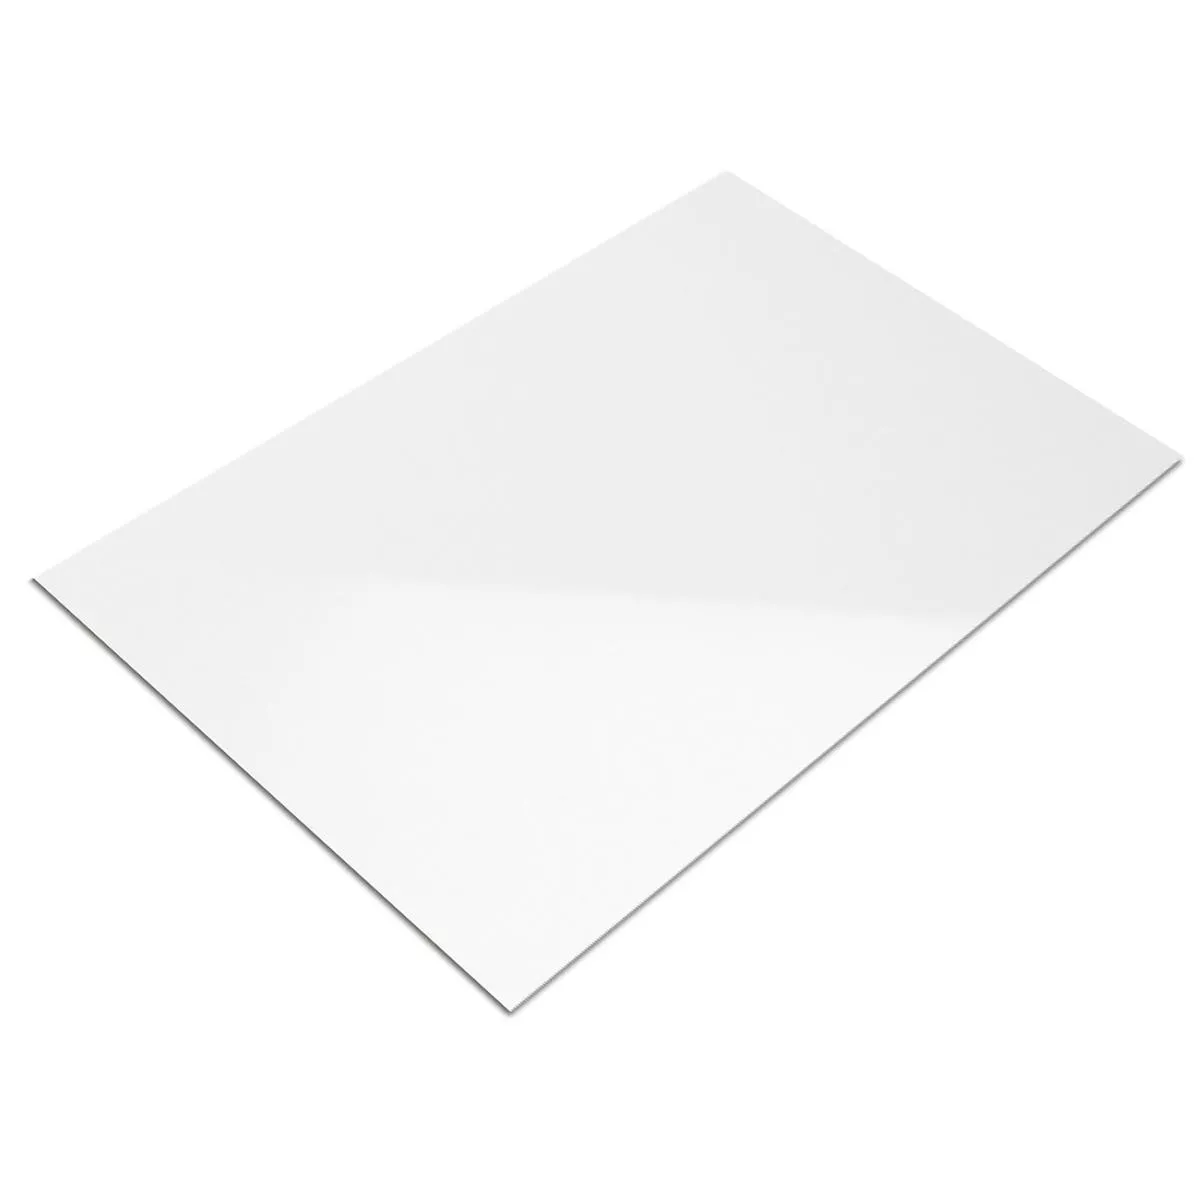 Muestra Revestimiento Fenway Blanco Brillante 15x20cm